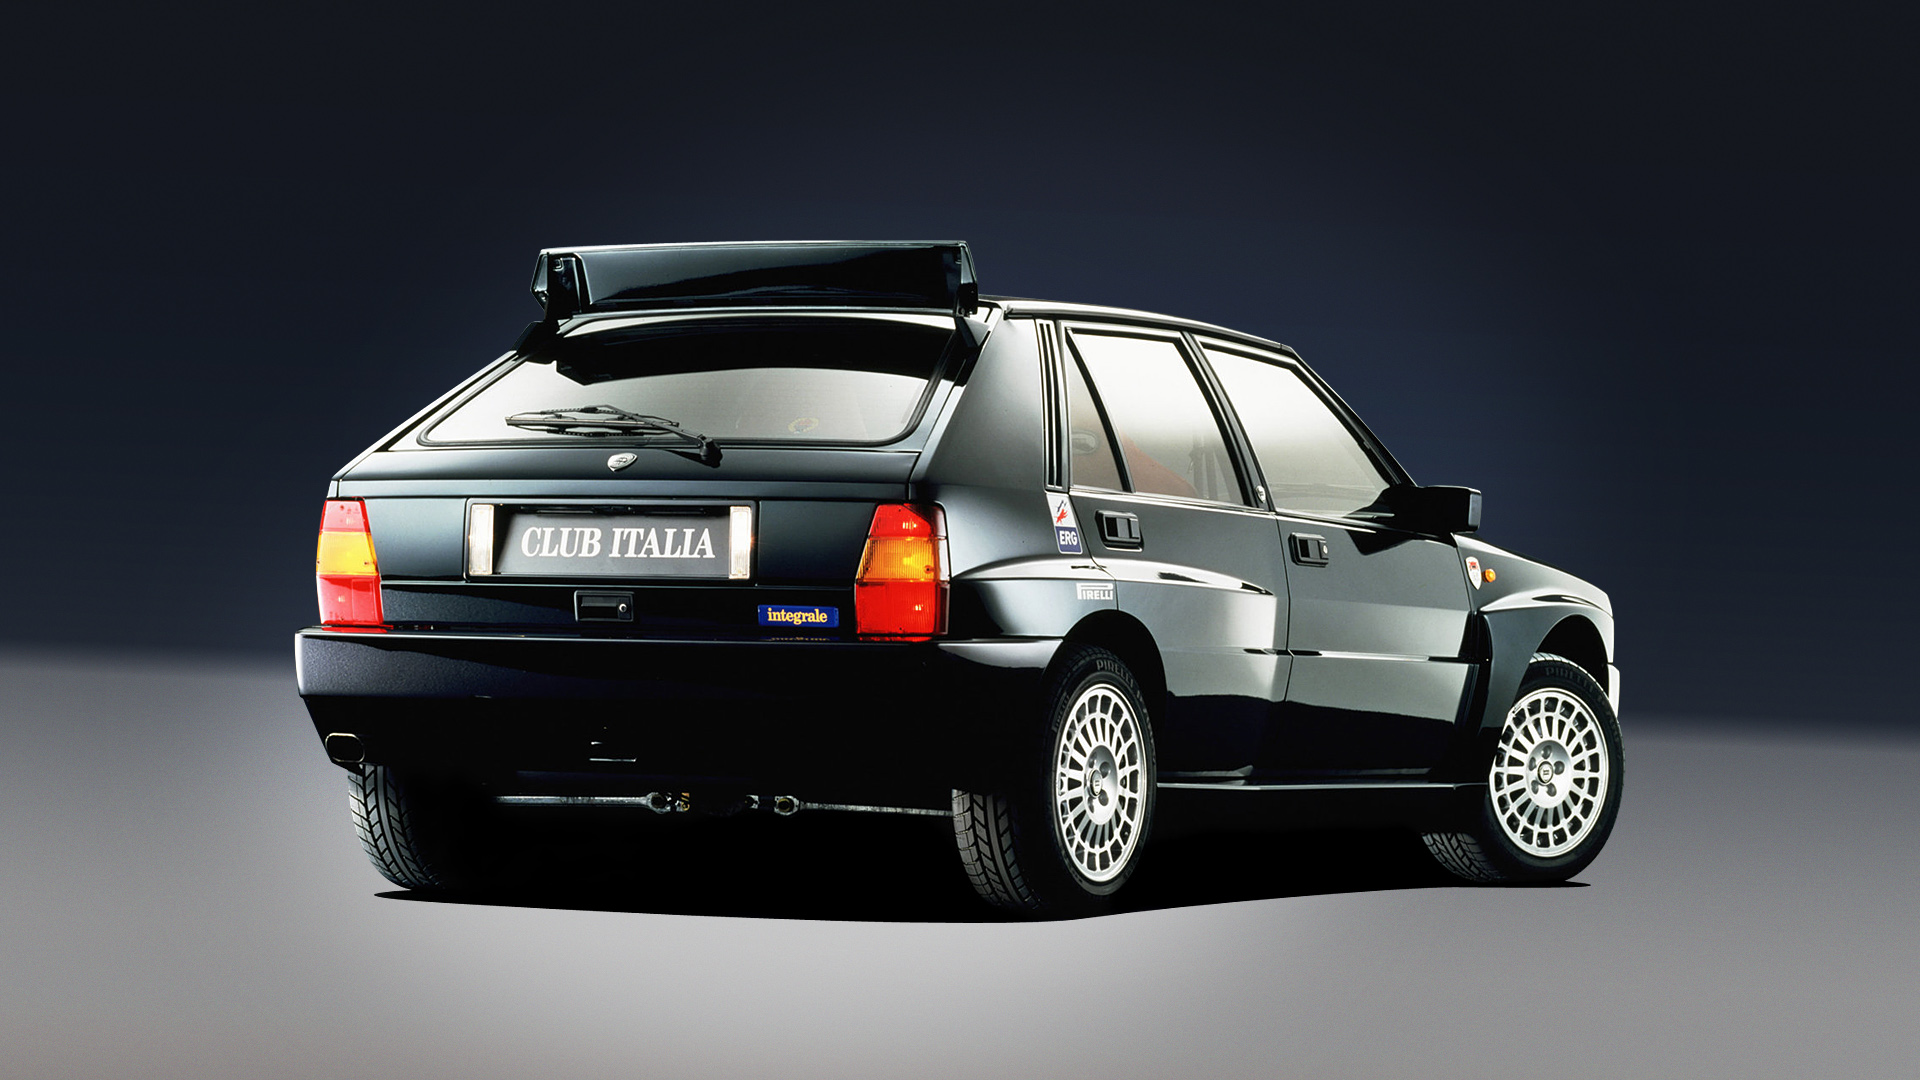  1992 Lancia Delta HF Integrale Evoluzione Wallpaper.